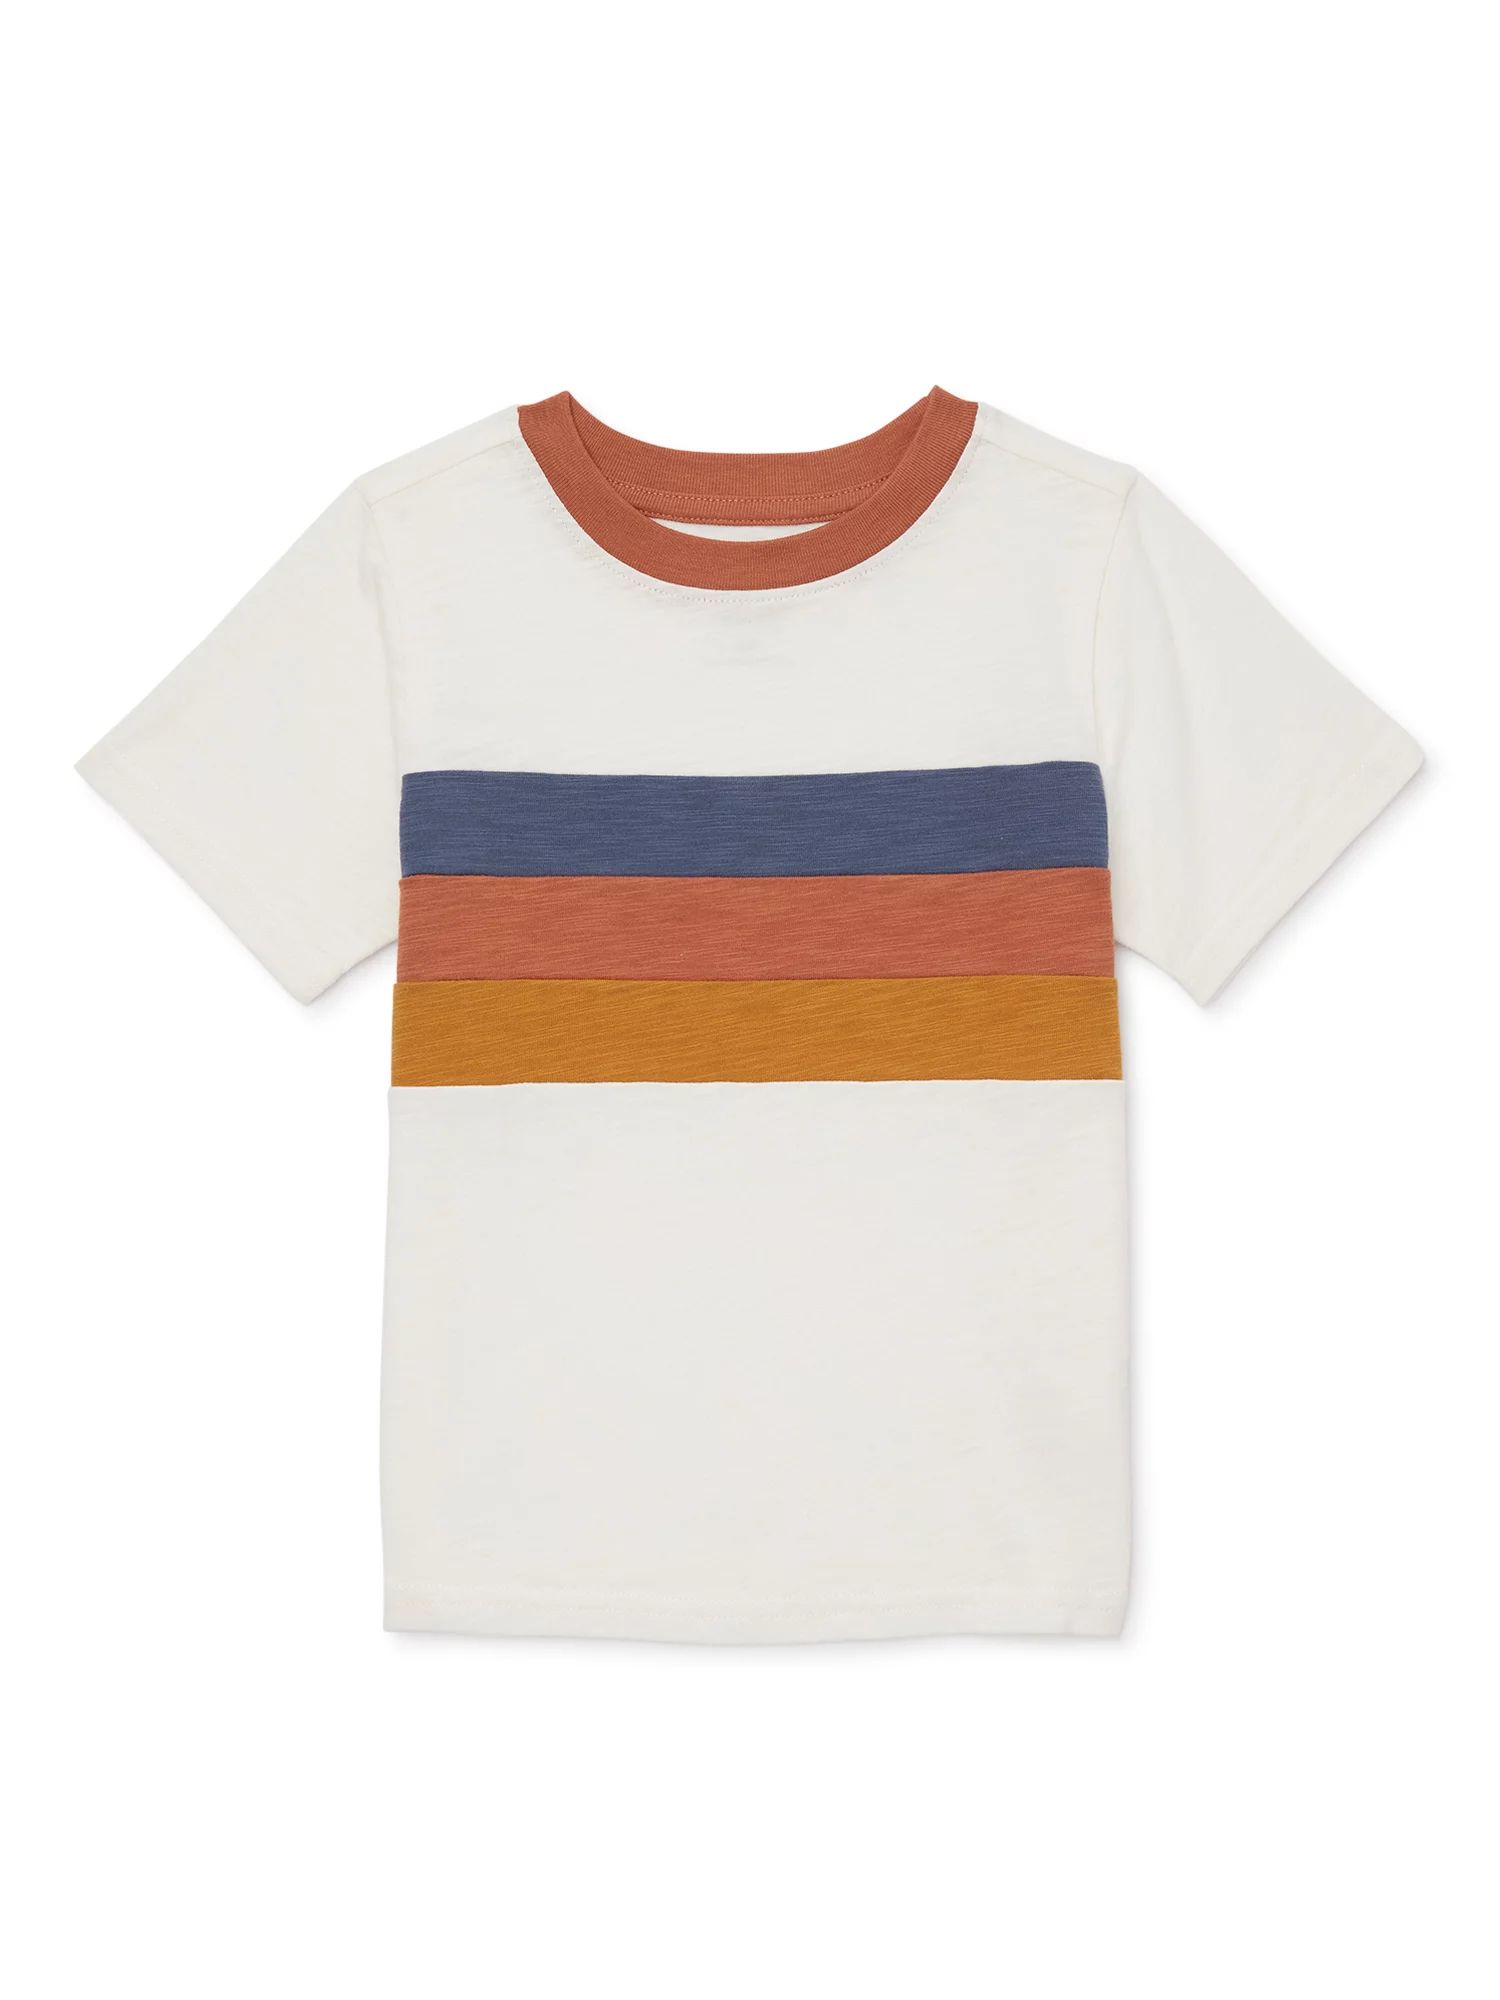 easy-peasy Toddler Boy Short Sleeve Ringer T-Shirt, Sizes 12M-5T | Walmart (US)